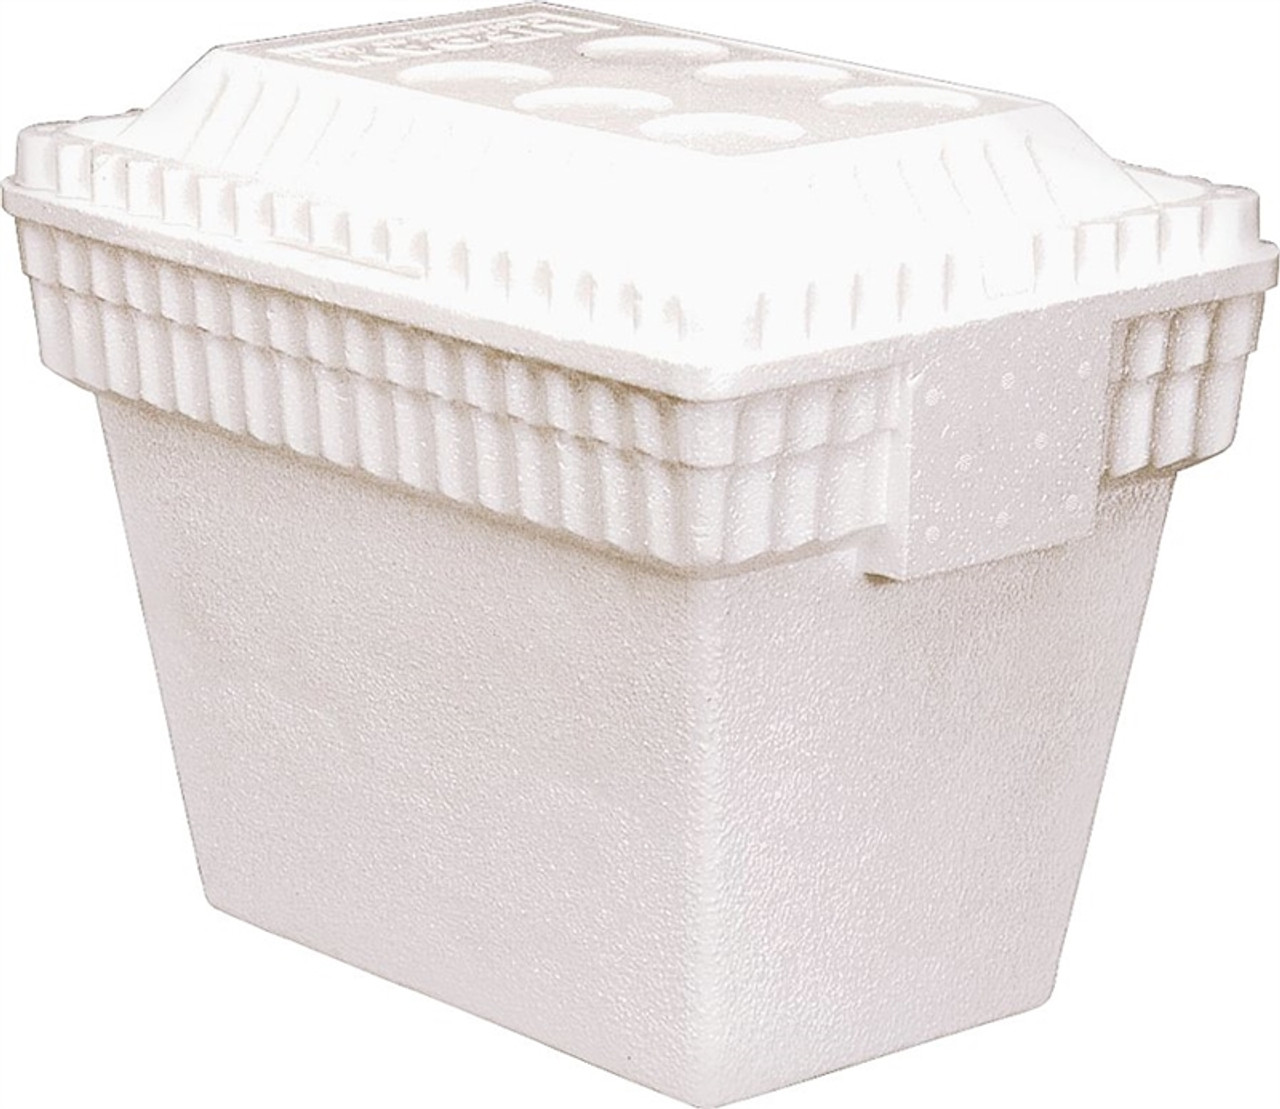 LIFOAM Styrofoam Cooler 28 Qt